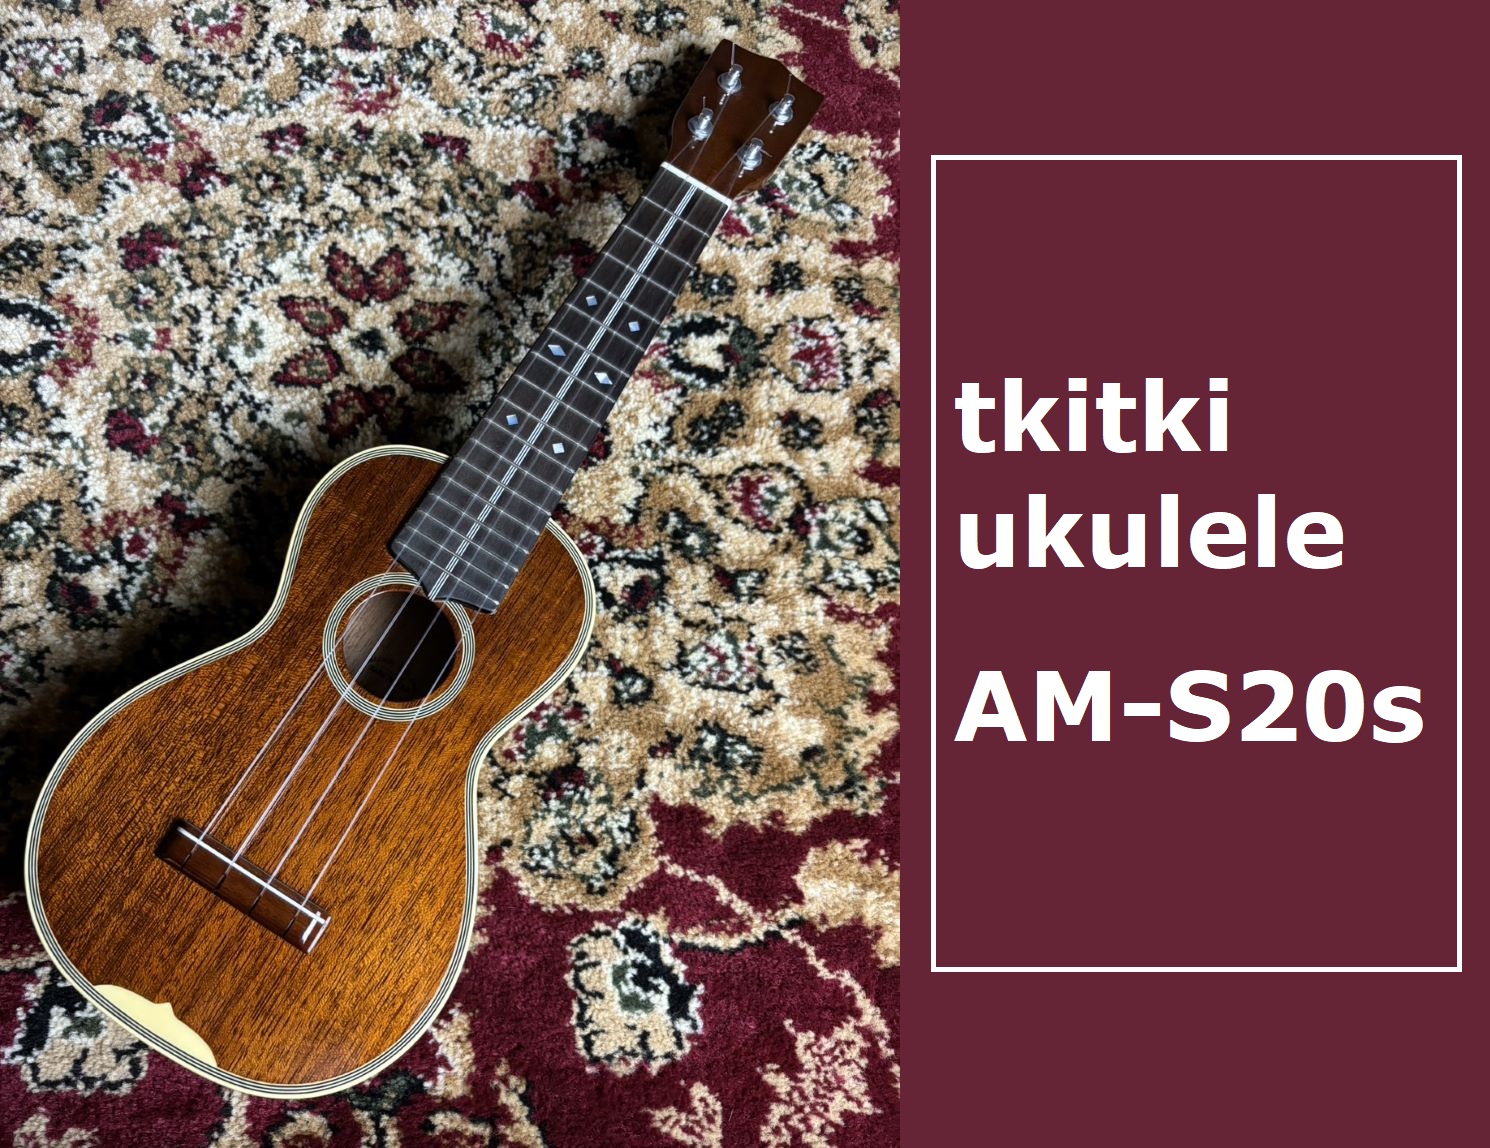 島村楽器大分店に、tkitki ukulele(ティキティキ・ウクレレ)のソプラノサイズウクレレ『AM-S20’s』が入荷致しました！ ビンテージ・マーチンのサウンドを目指した国産ウクレレブランドの「tkitki ukulele」から当社限定仕様のソプラノウクレレが登場です。サウンドは軽快で明るくマ […]